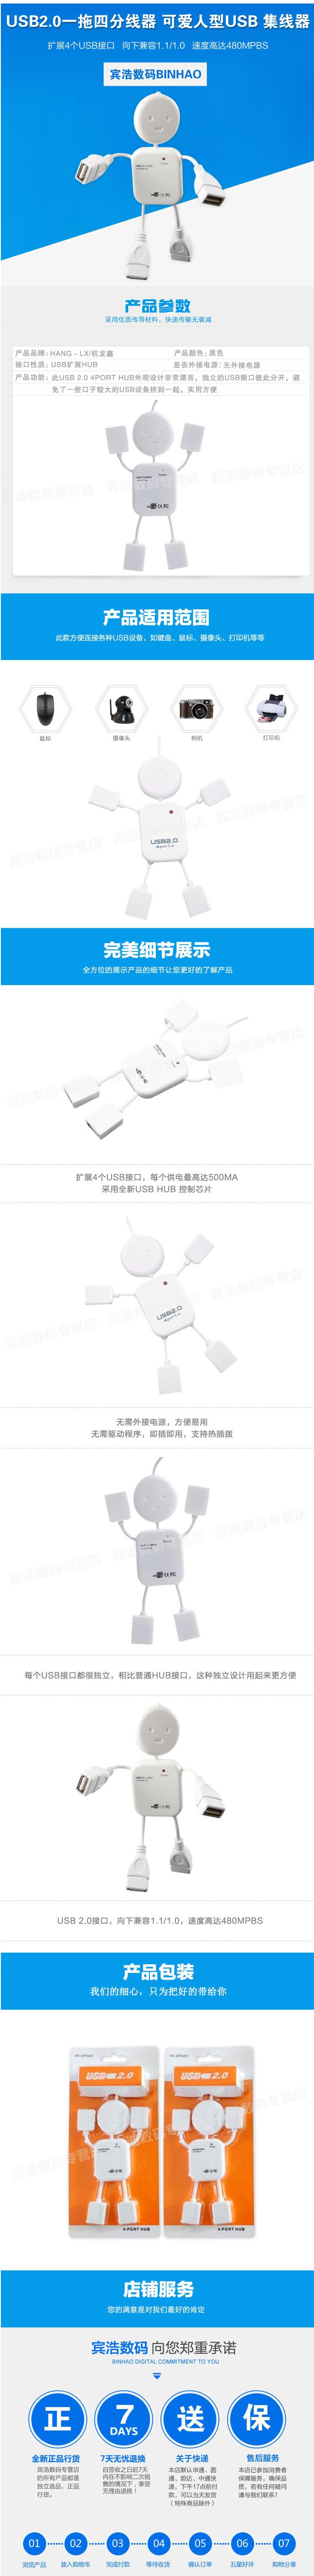 【邮乐赣州馆】HLX 小人形USB扩展HUB usb2.0一拖四分线器 可爱人型usb 集线器